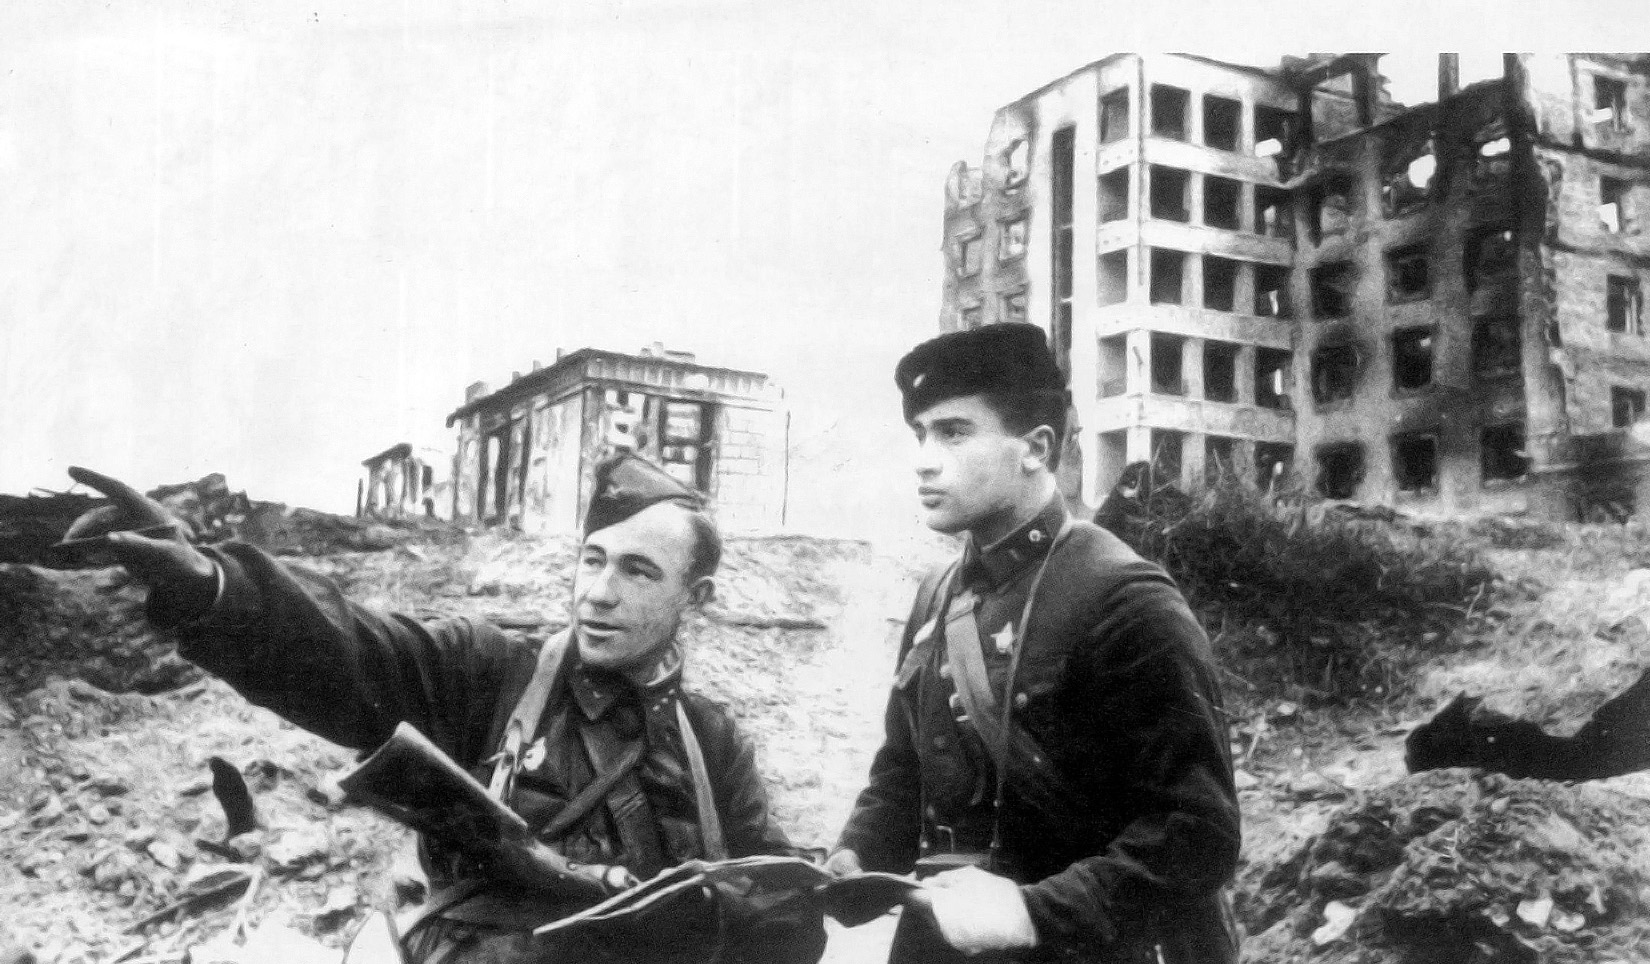 Битва за сталинград картинки